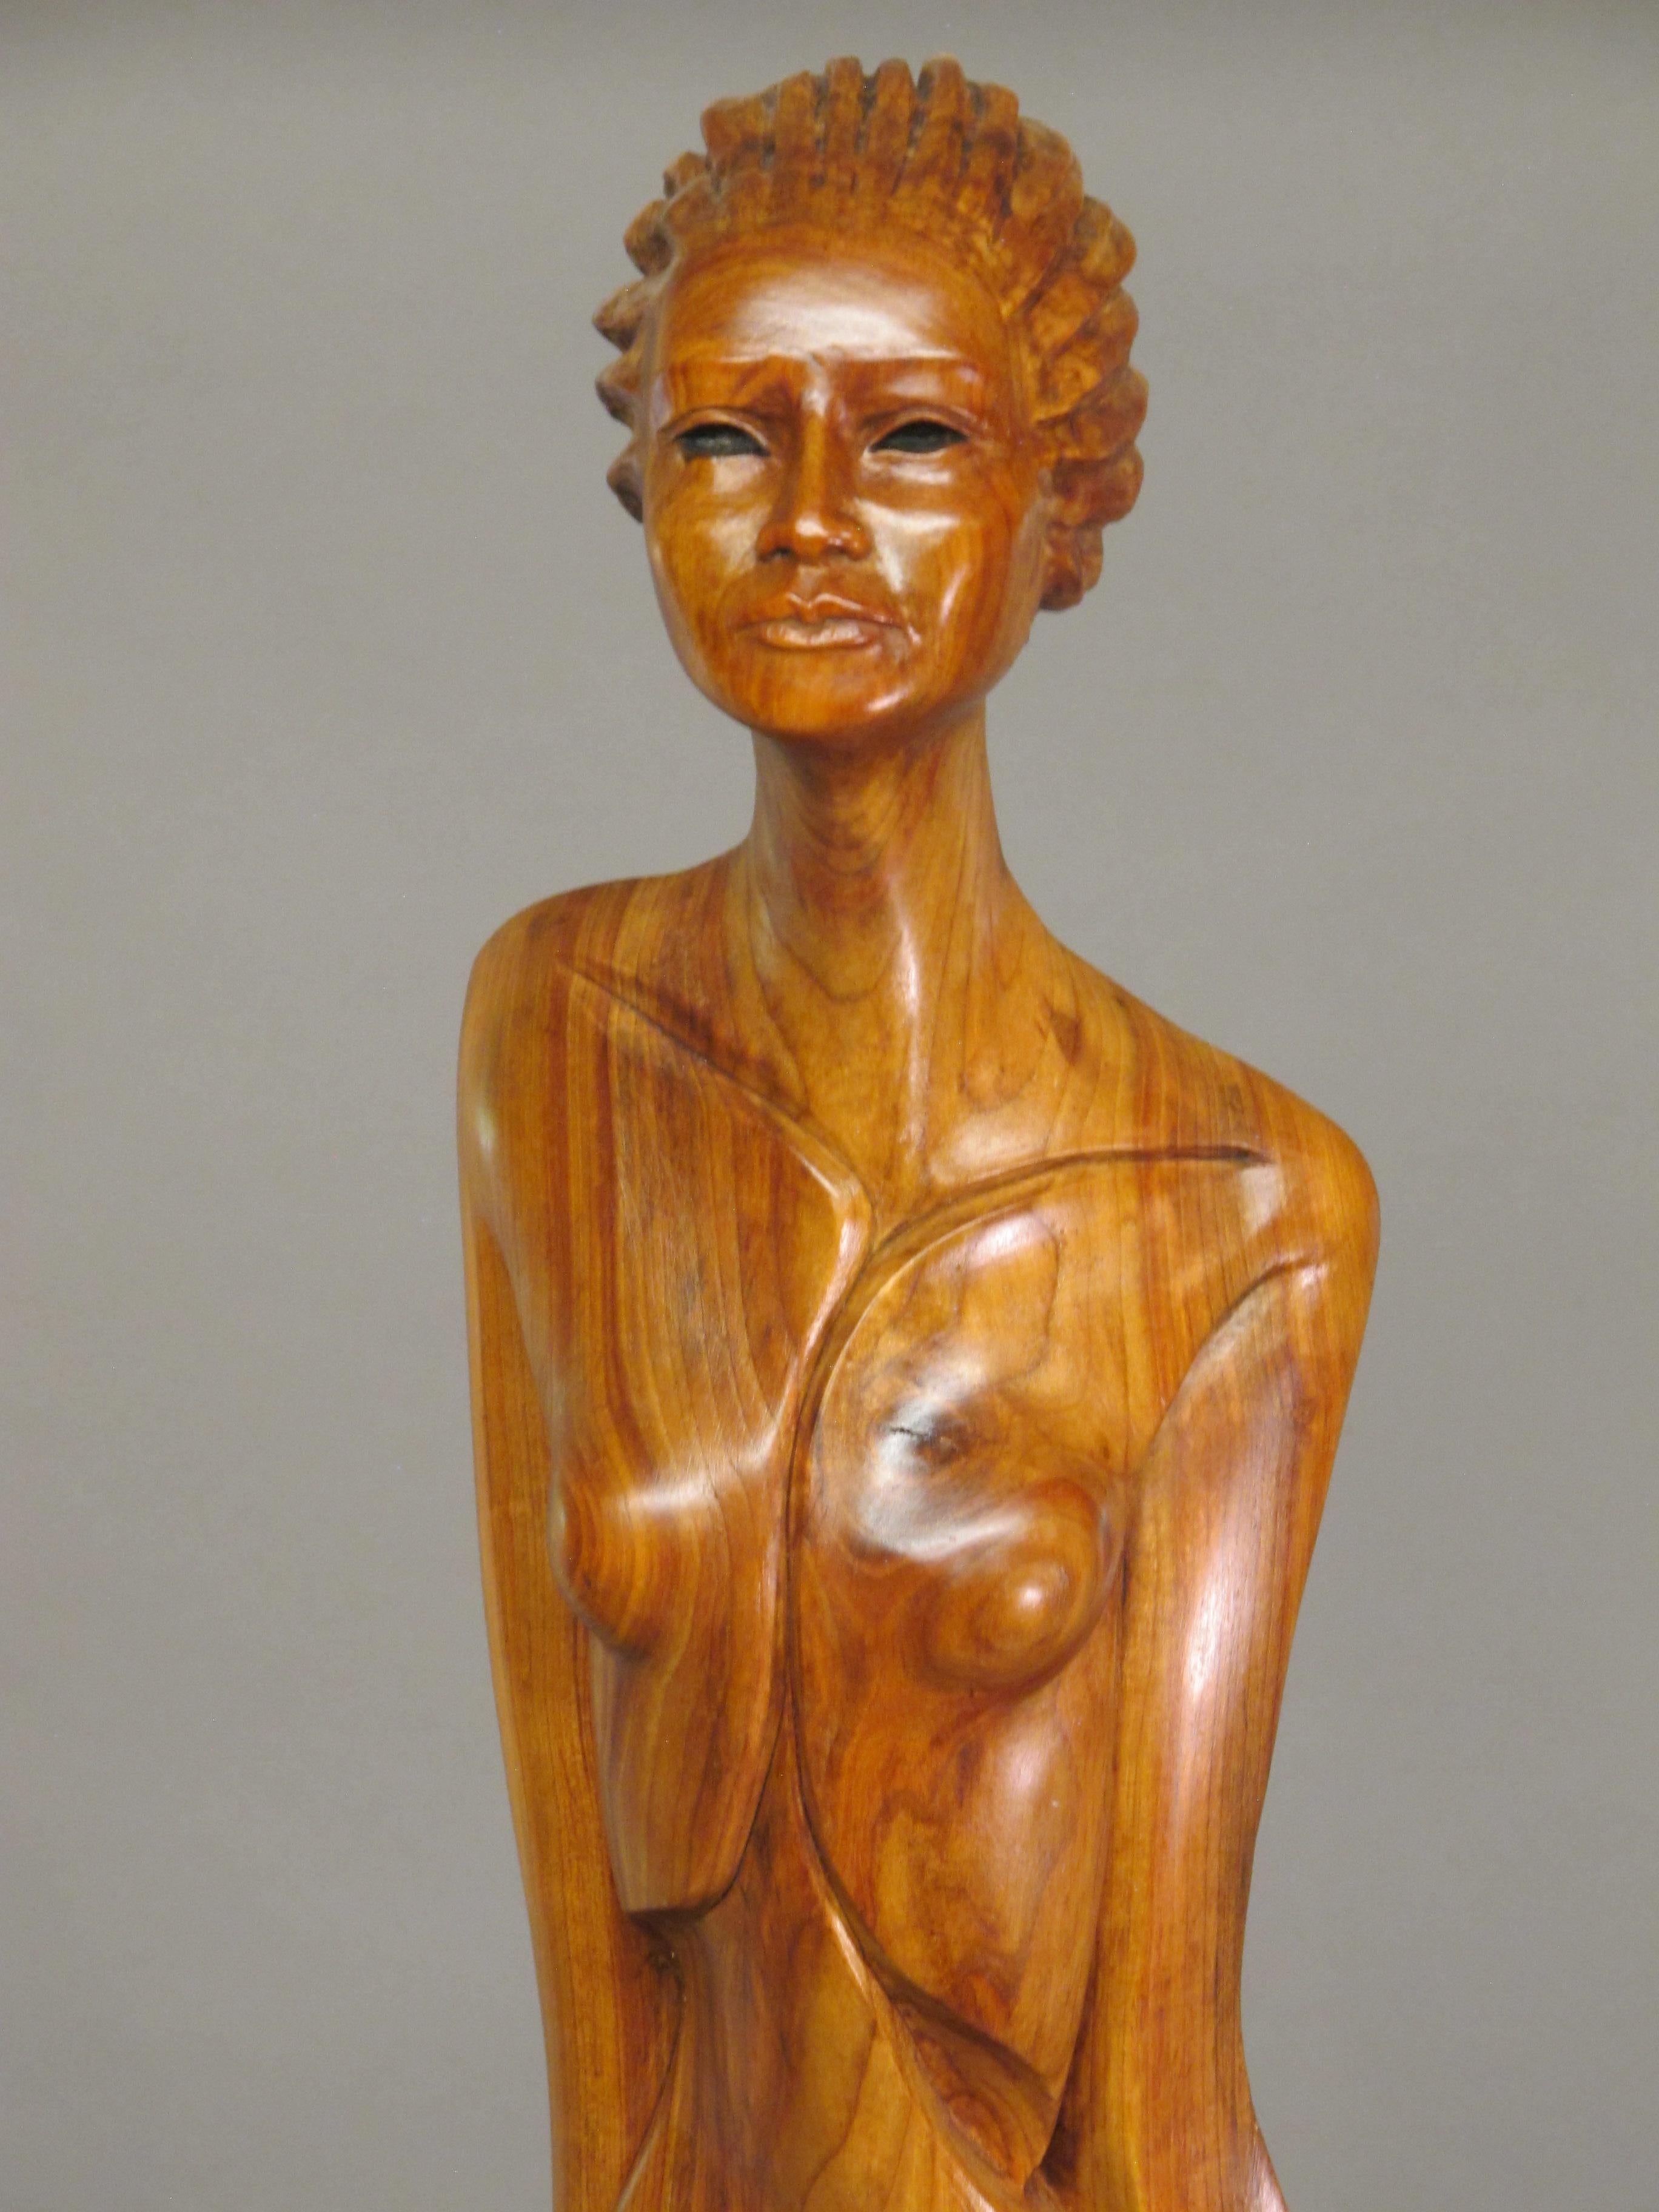 Troy Williams Figurative Sculpture – Places In The Heart, Skulptur aus Nussbaumholz auf Stahlsockel, weiblicher Akt, braun